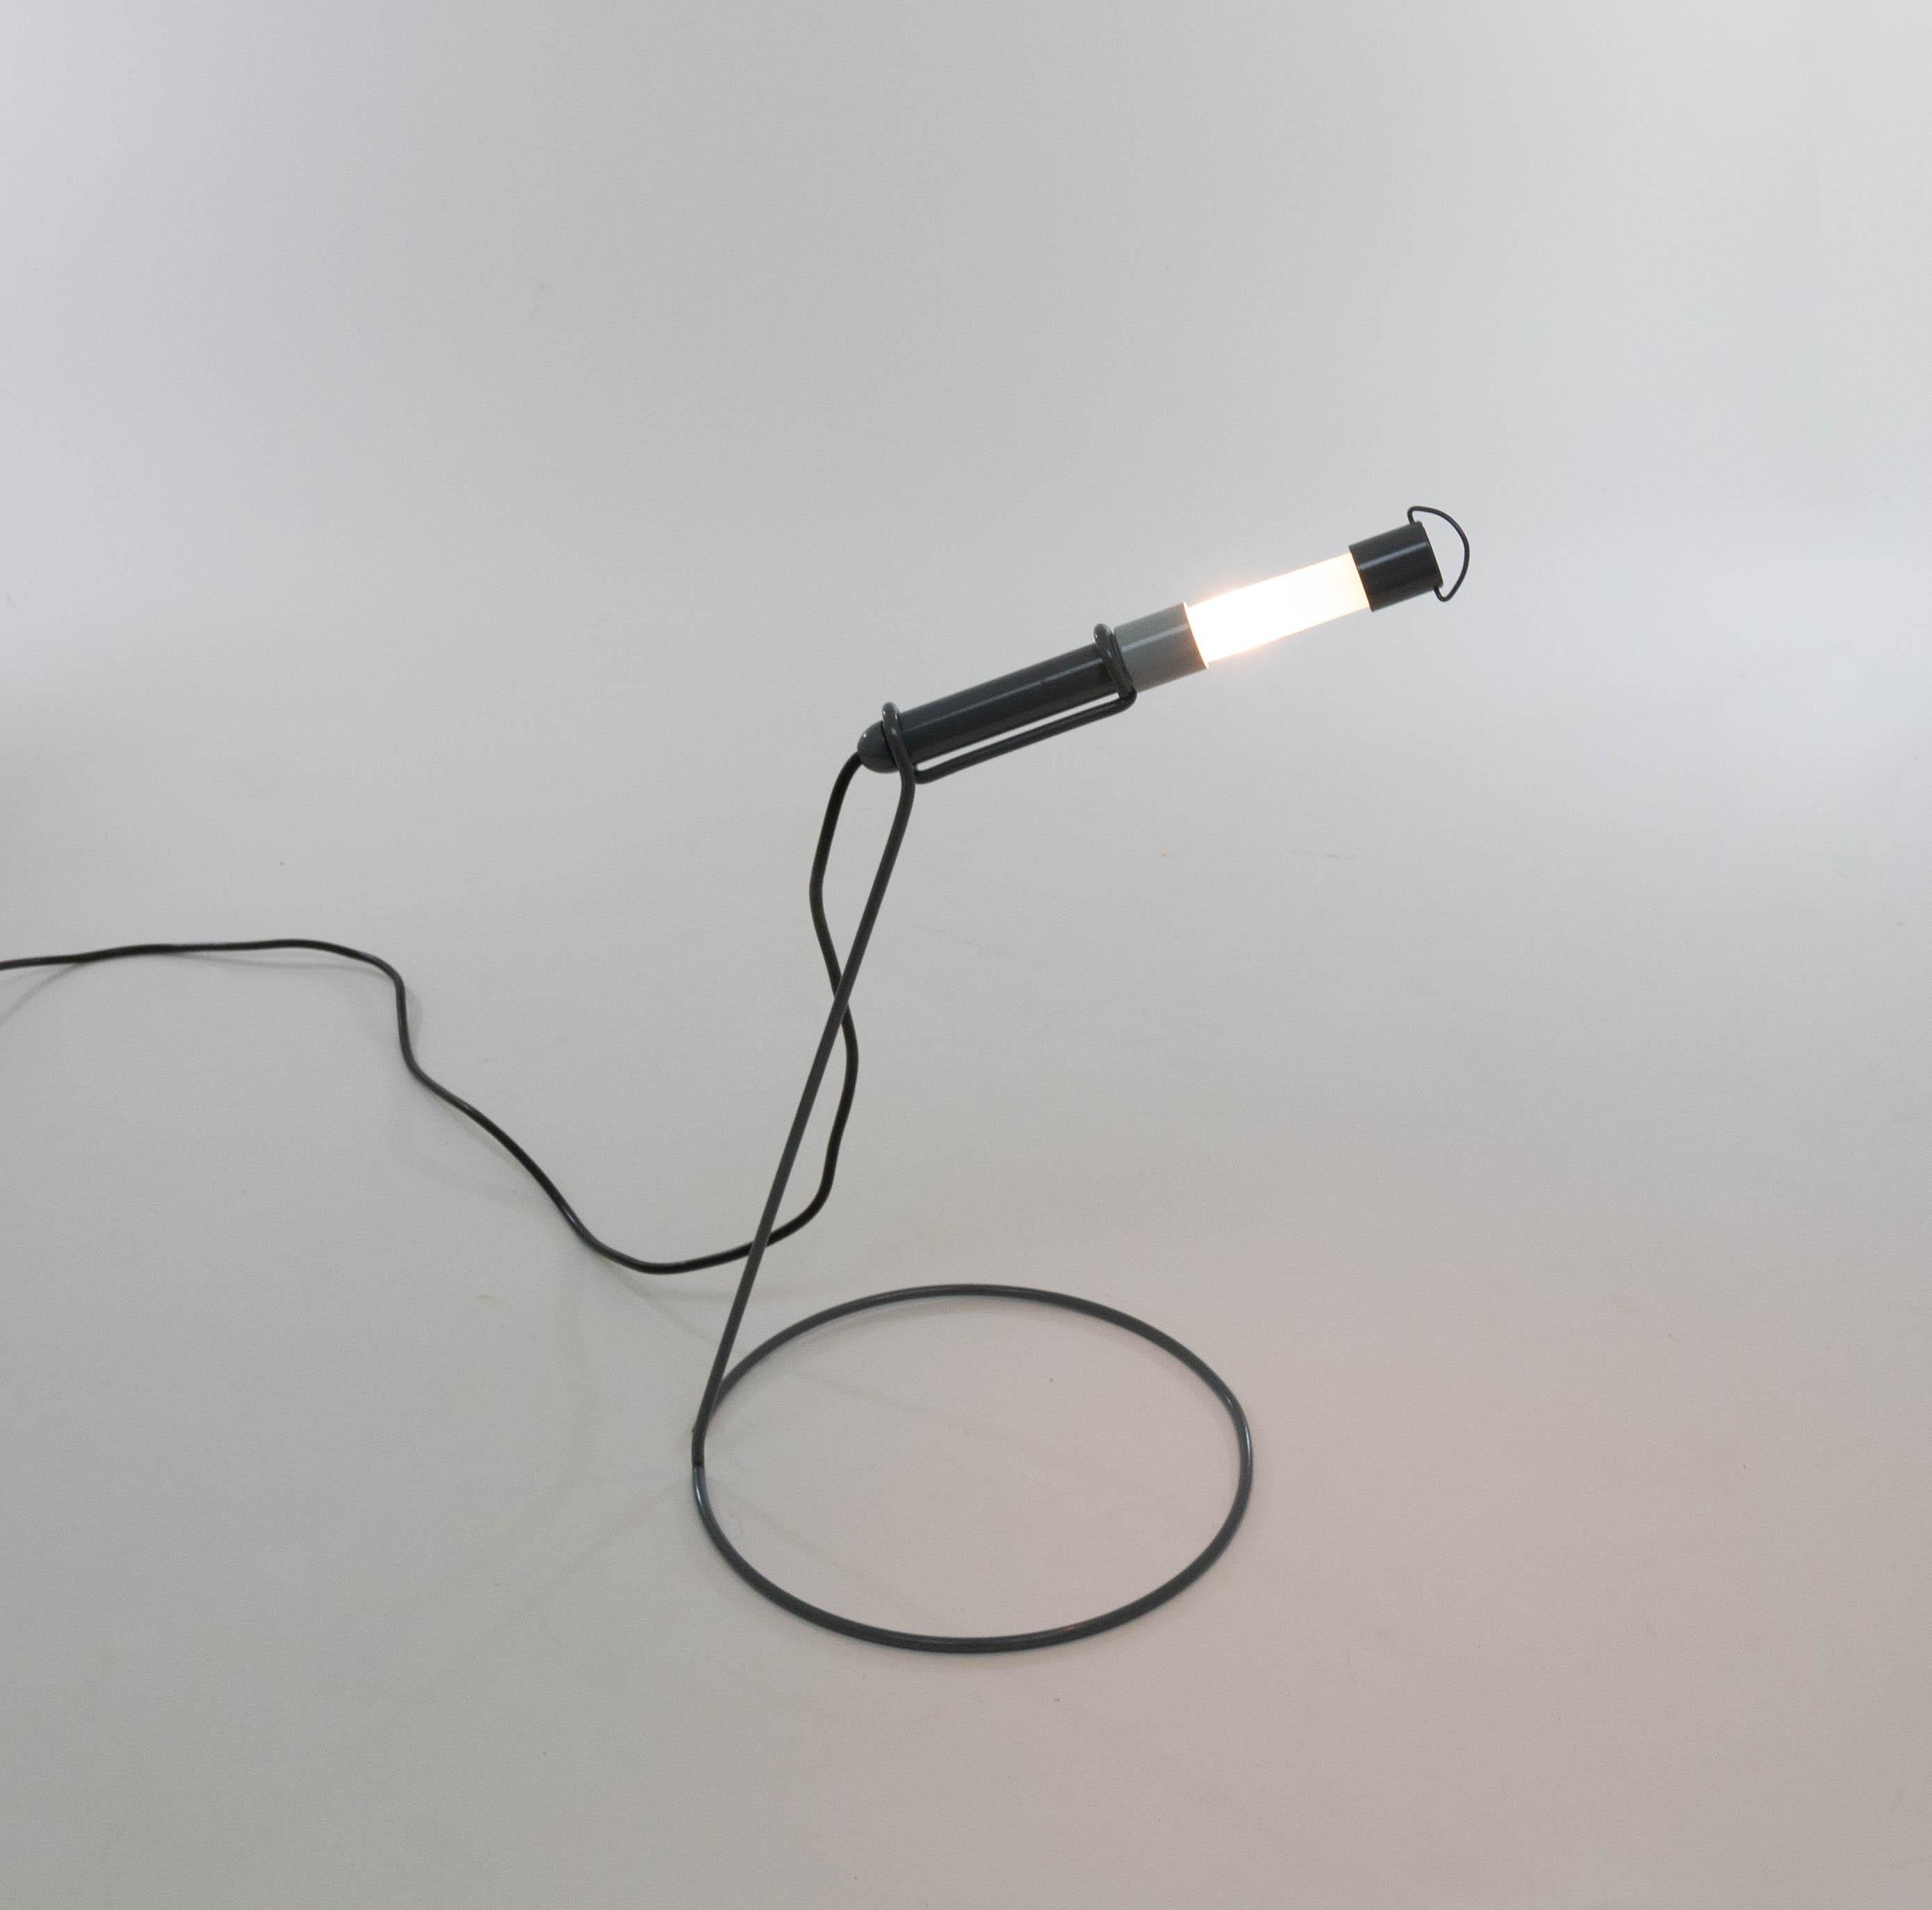 Lampe de table Edy conçue par Piero Castiglioni pour Fontana Arte en 1982.

Outre une lampe de table, la série de lampes basse tension Edy se compose d'une suspension, d'une applique et d'un lampadaire, chacun avec une armature métallique